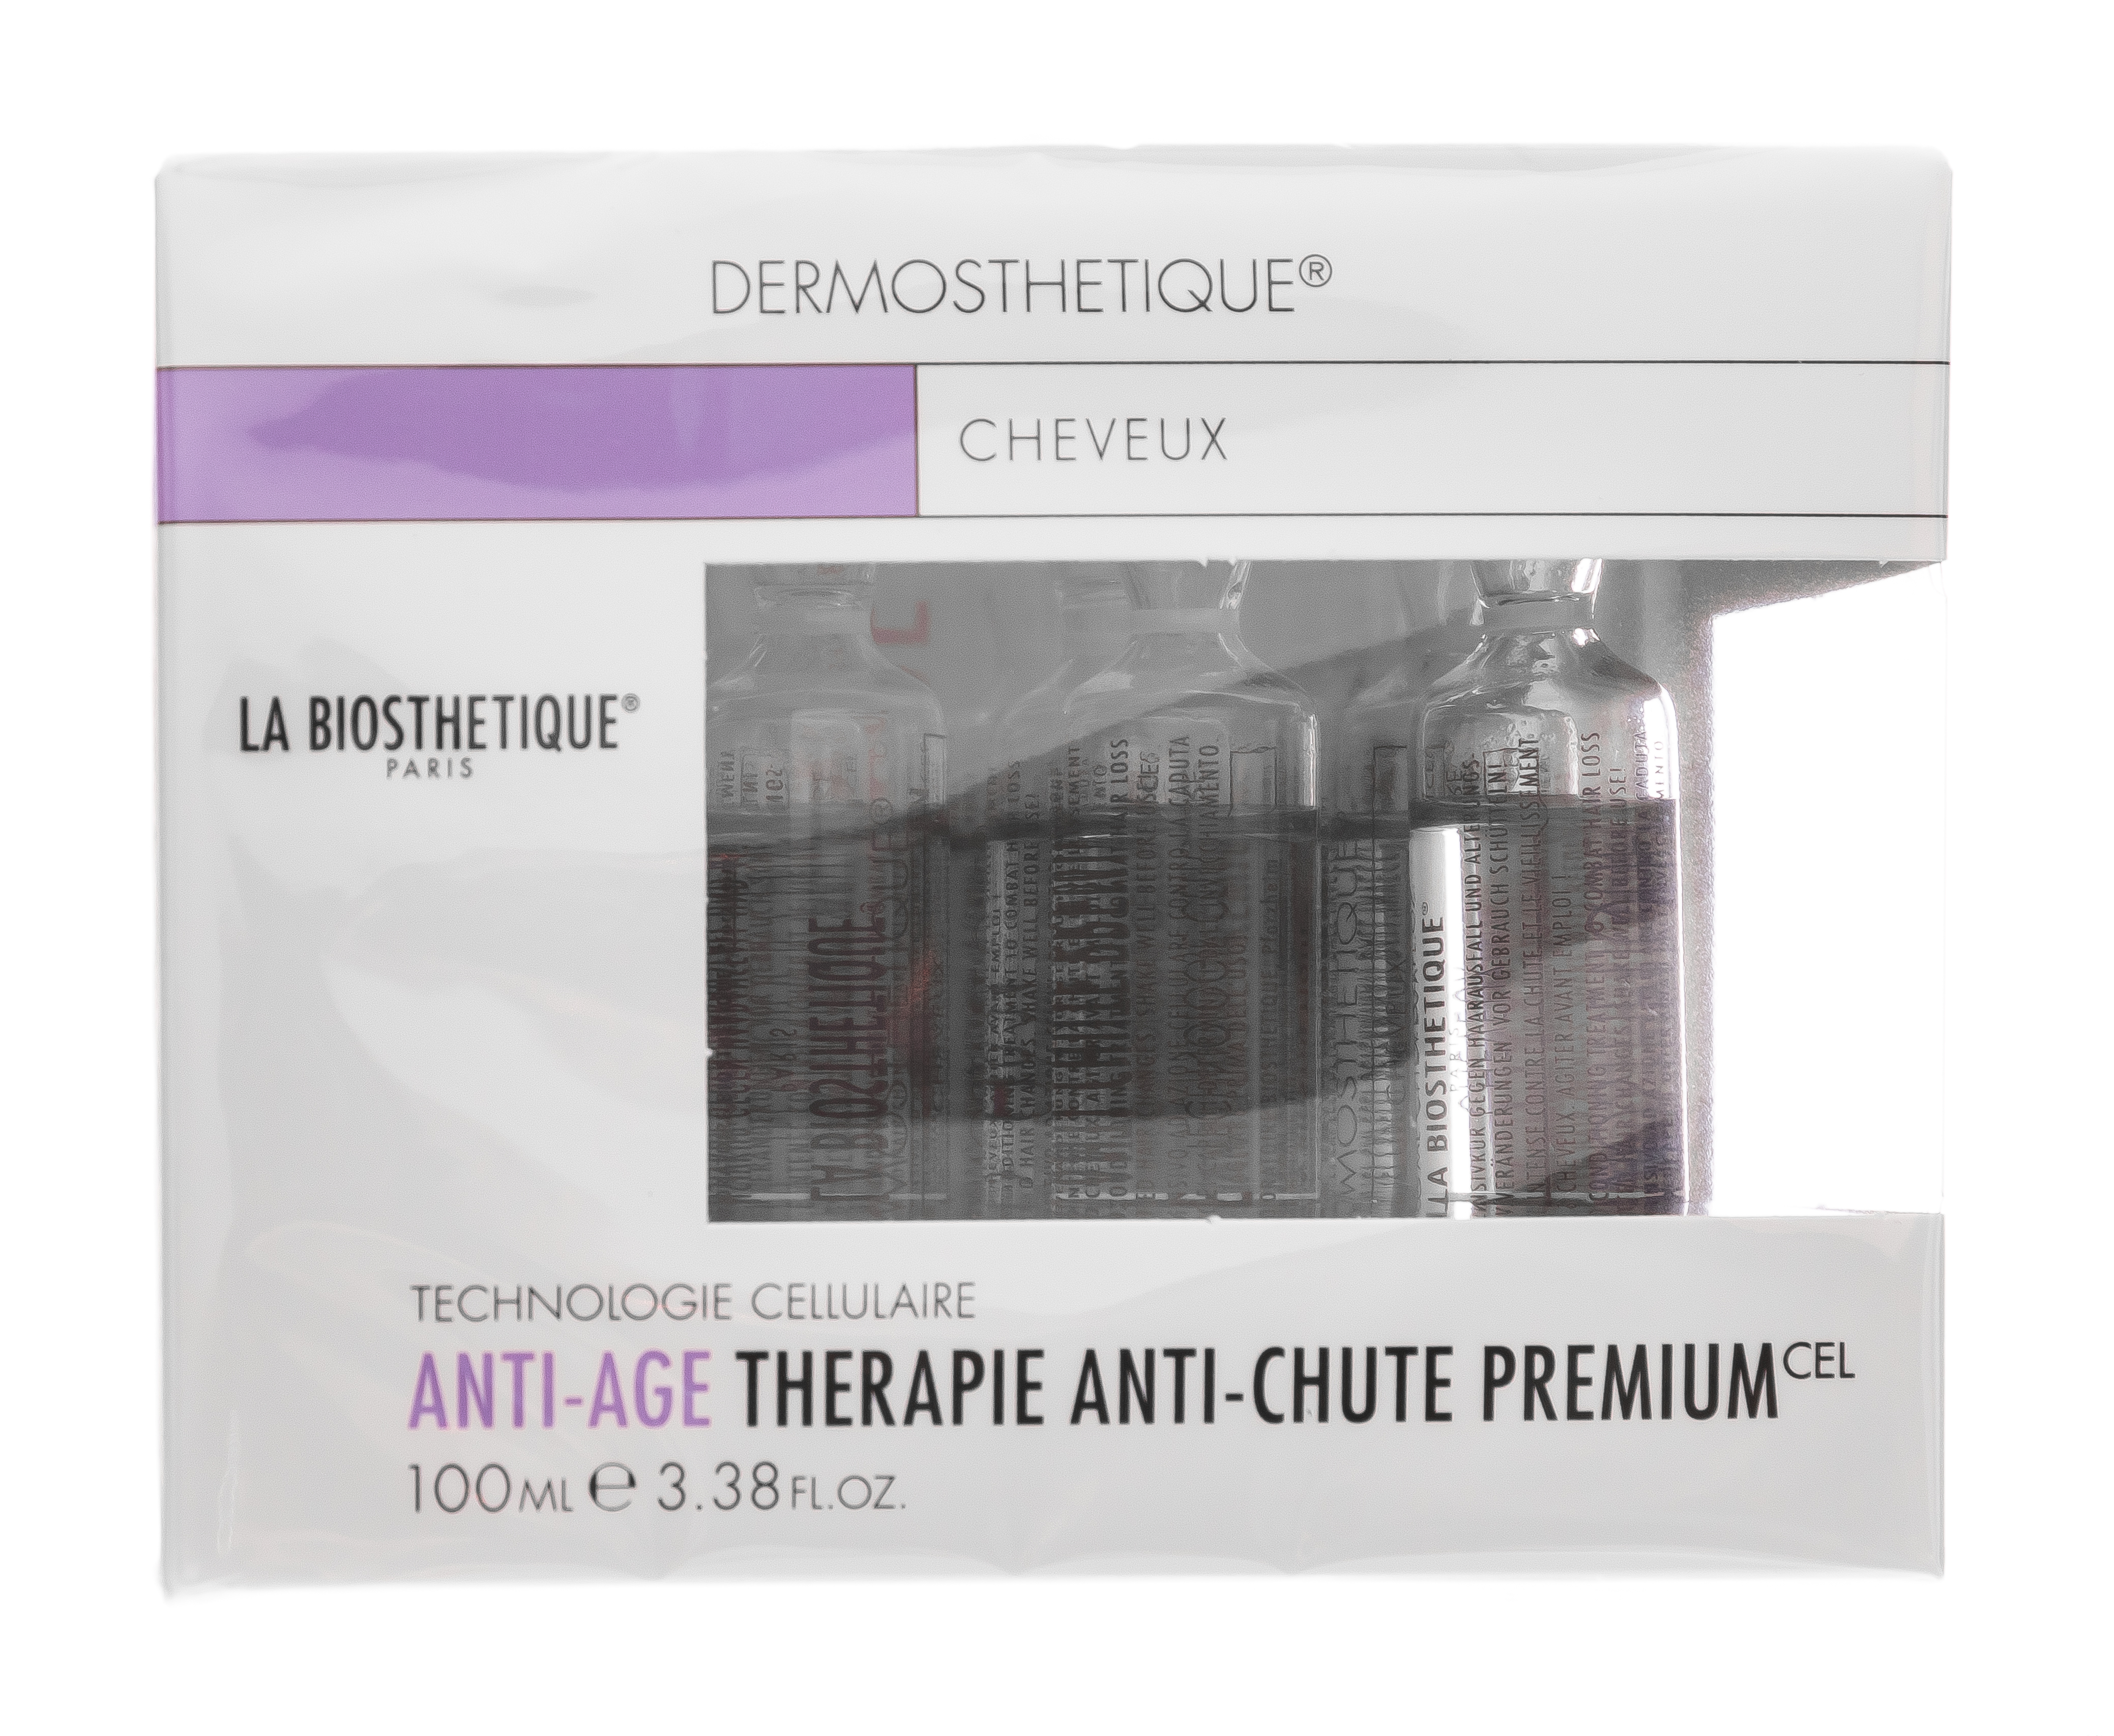 La Biosthetique Therapie Anti-Chute Premium Клеточно-активный интенсивный уход против выпадения и истончения волос, 10 ампул (La Biosthetique, Выпадение волос)